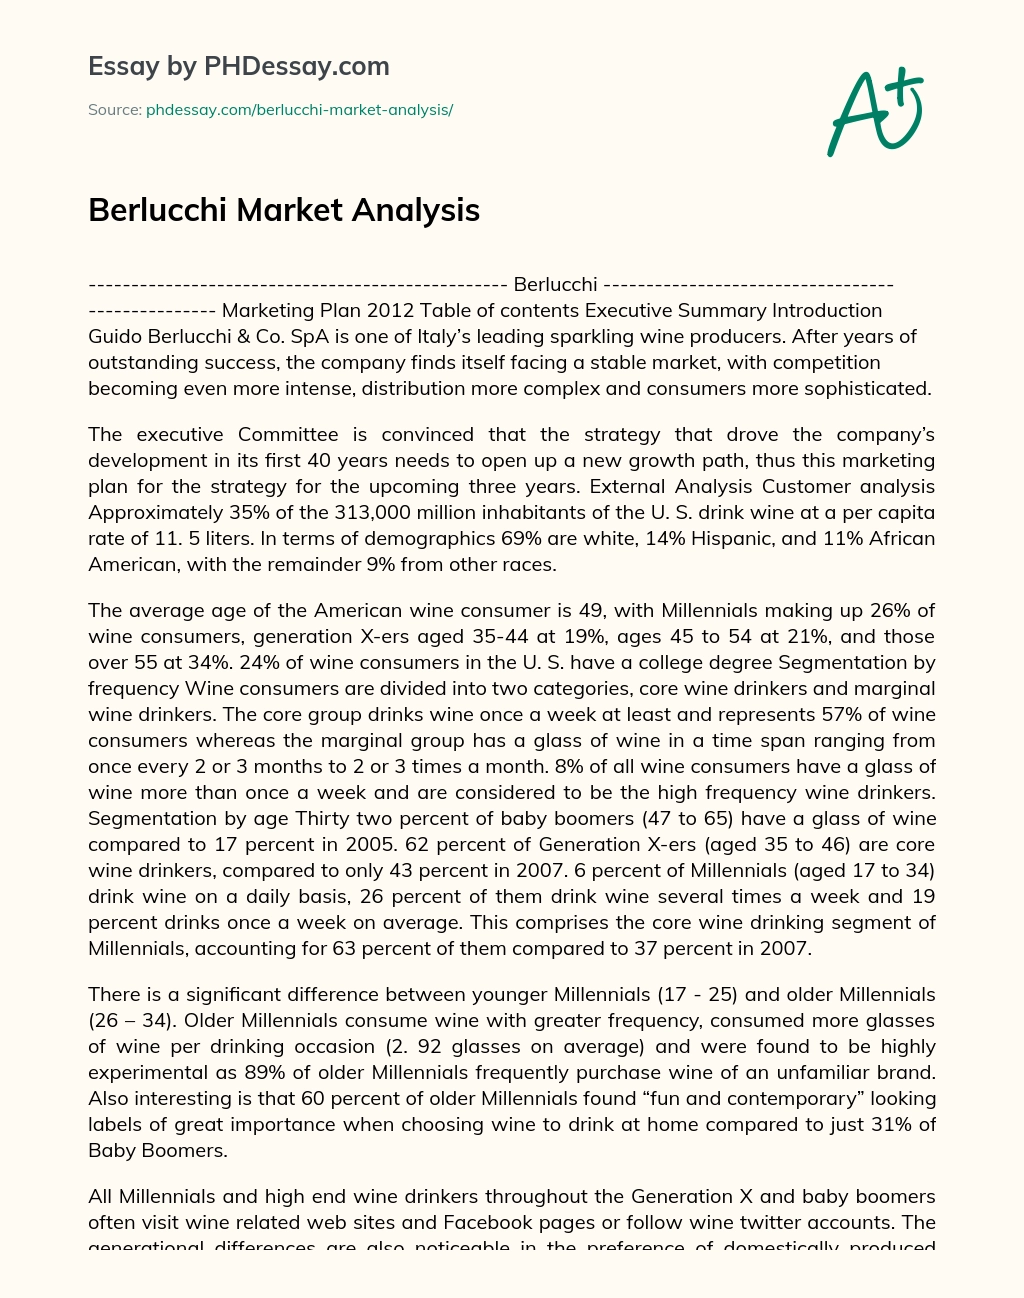 Berlucchi Market Analysis essay